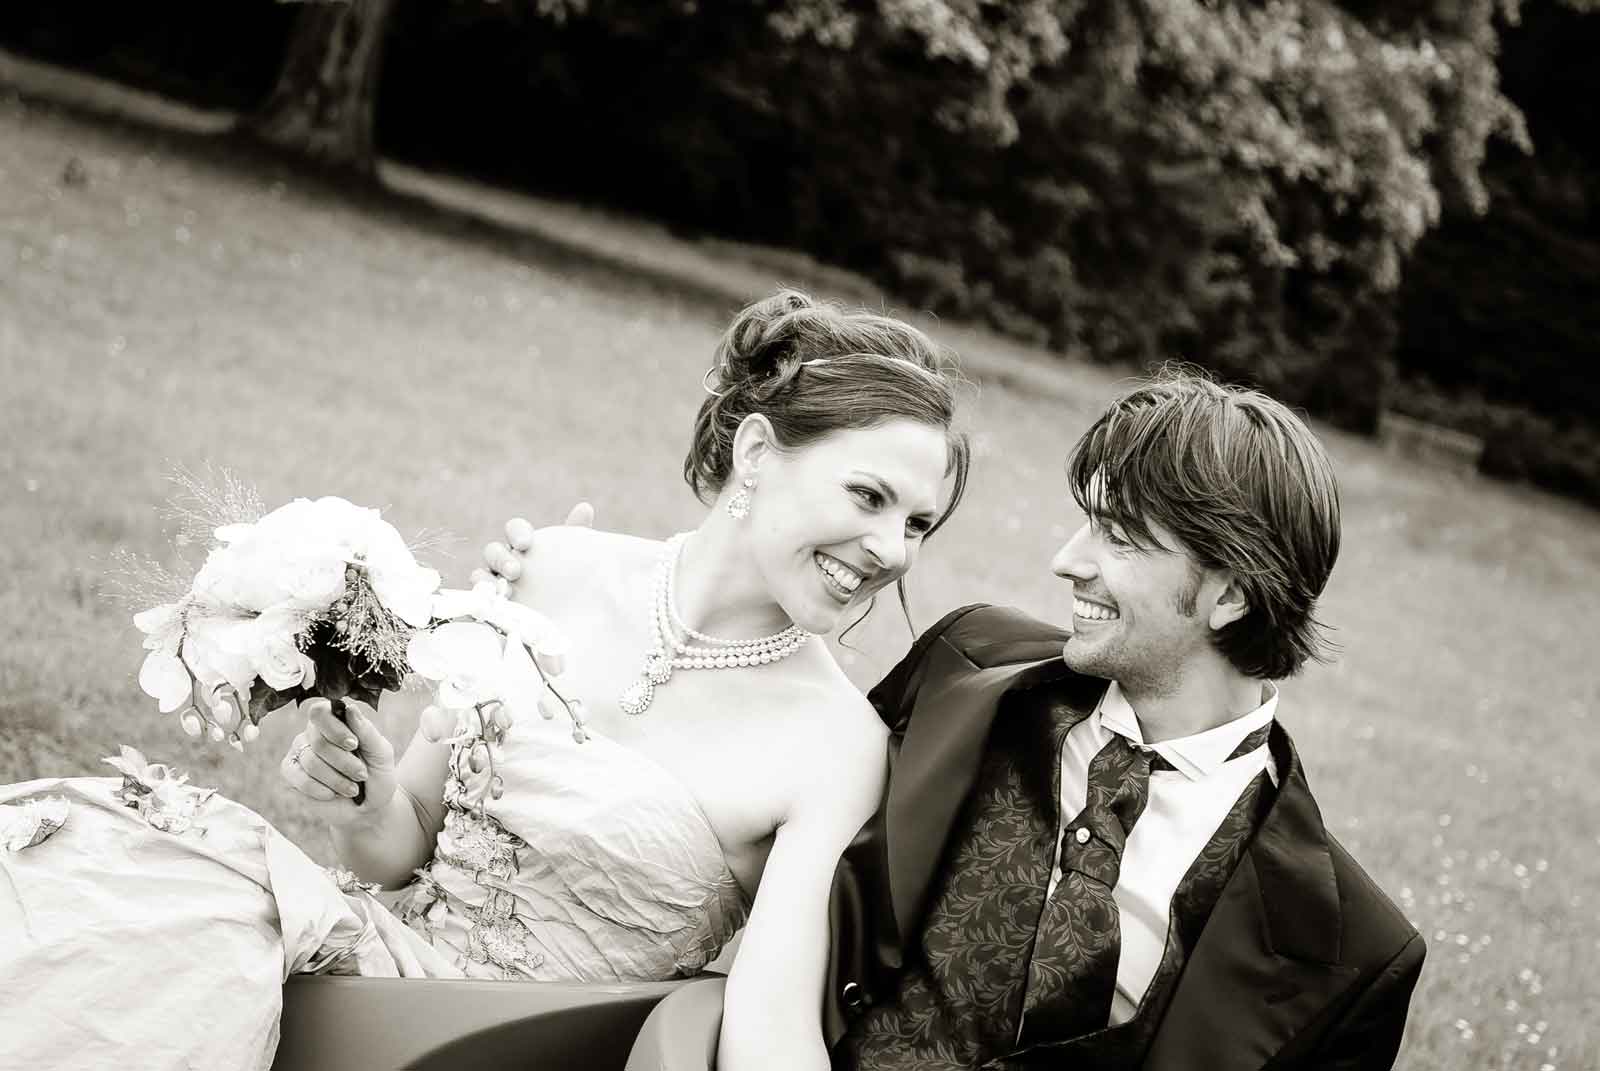 Huwelijk in de tuin van Kasteel Vaeshartelt te Maastricht. Bruidspaar kijkt lachend naar elkaar zitten op 2 stoeltjes